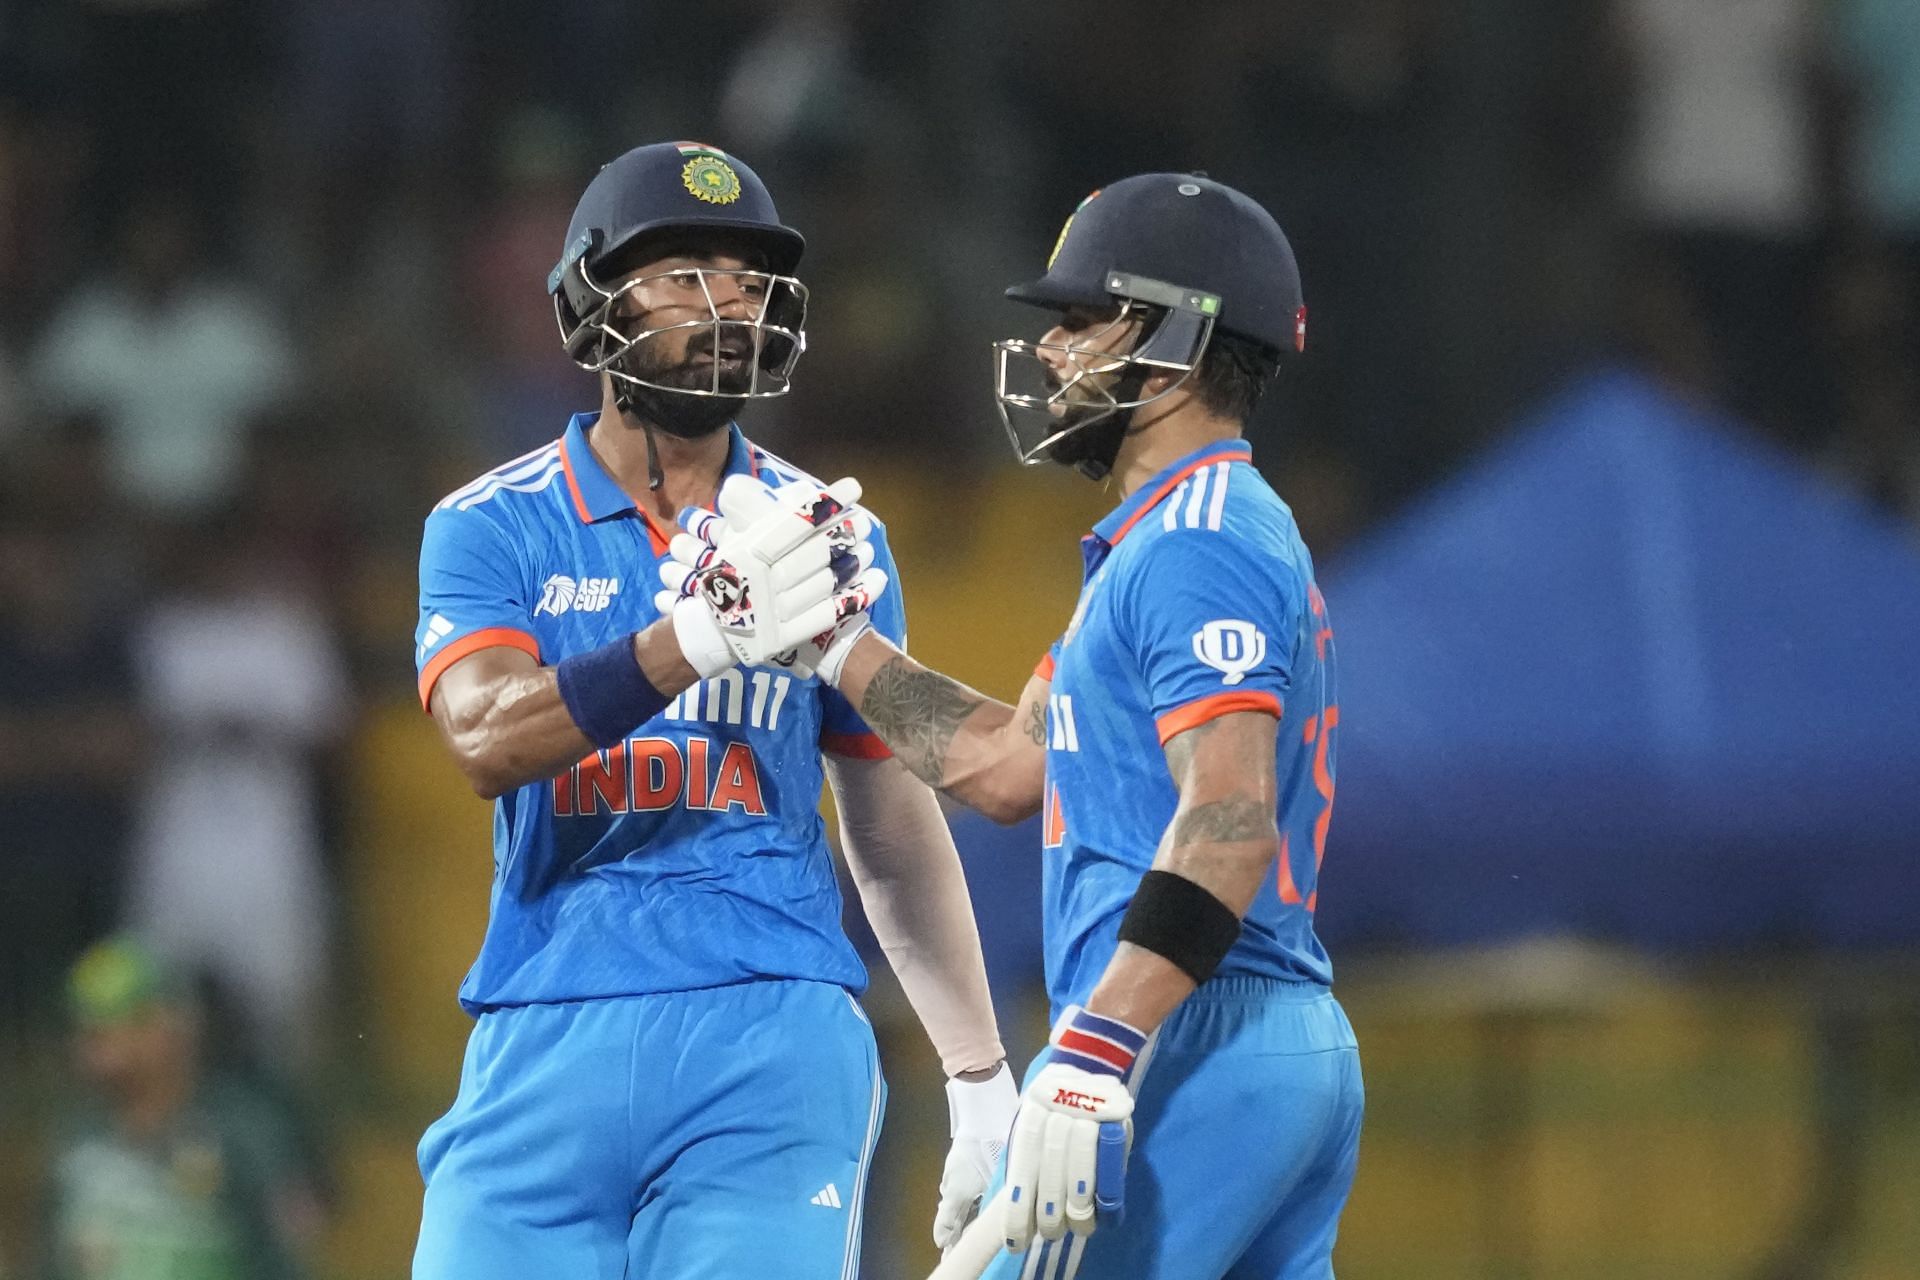 KL Rahul and Virat Kohli strung together an unbroken 233-run third-wicket partnership. [P/C: AP]